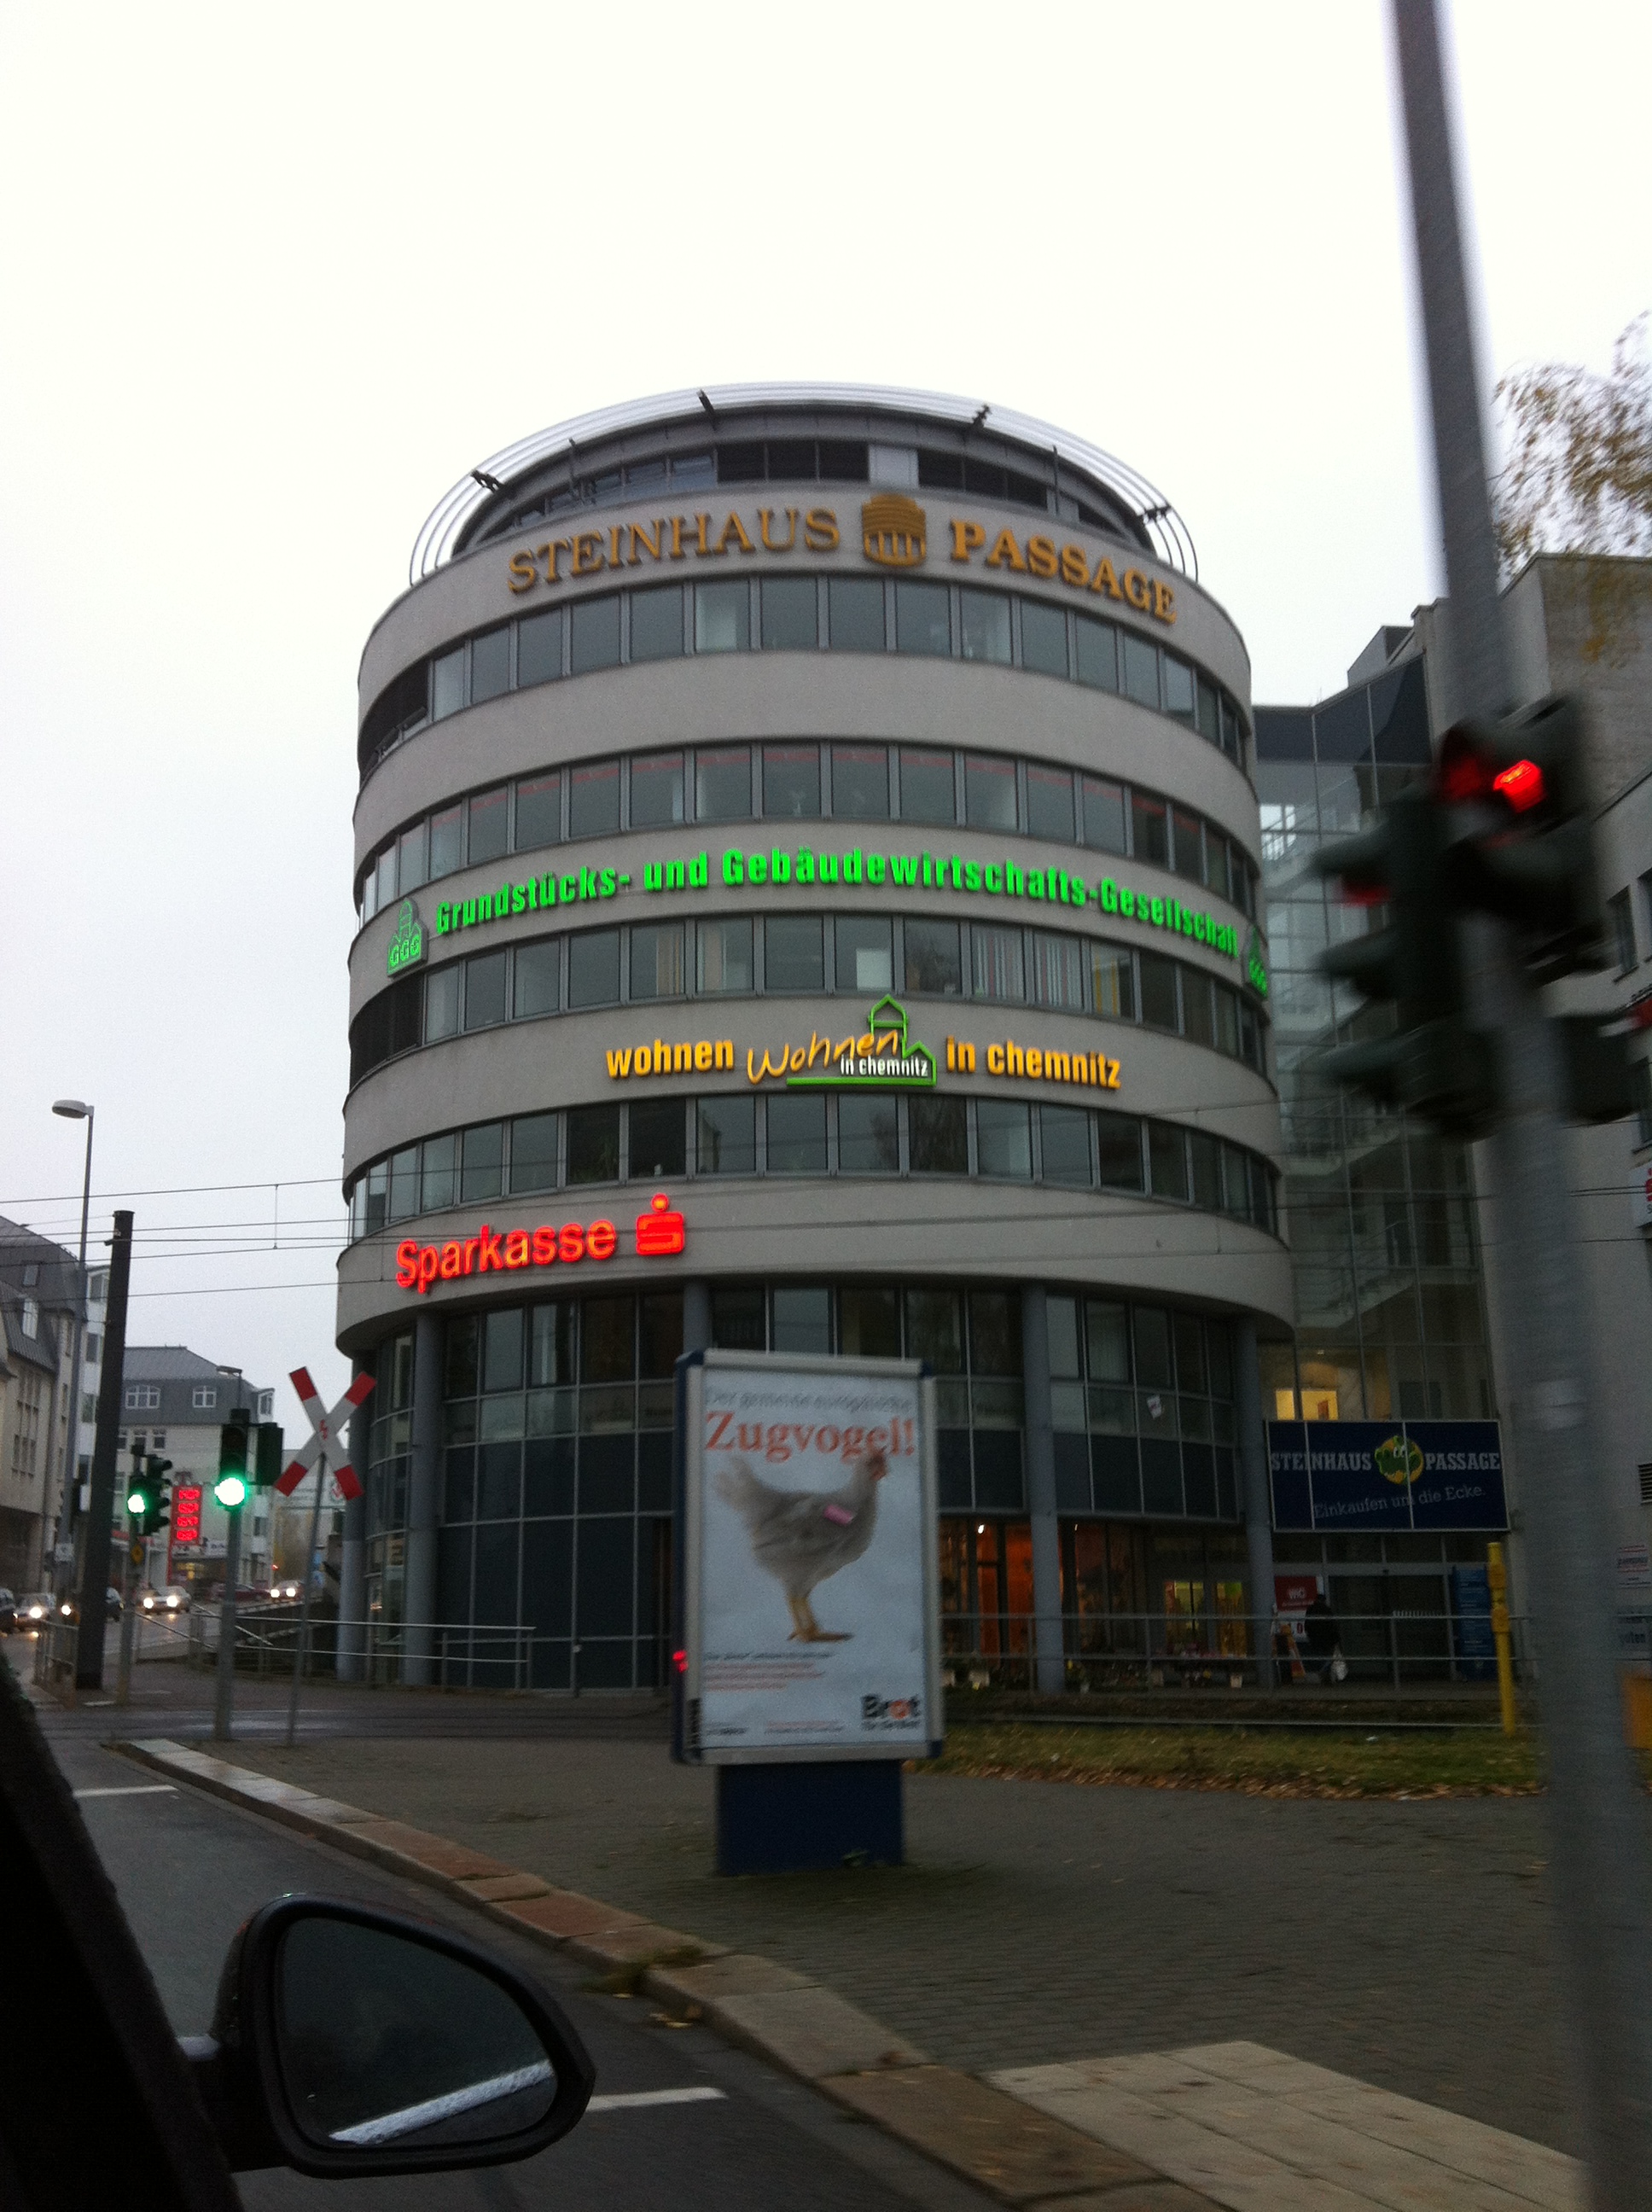 Bild 11 Grundstücks- und Gebäudewirtschafts-Gesellschaft m.b.H. in Chemnitz